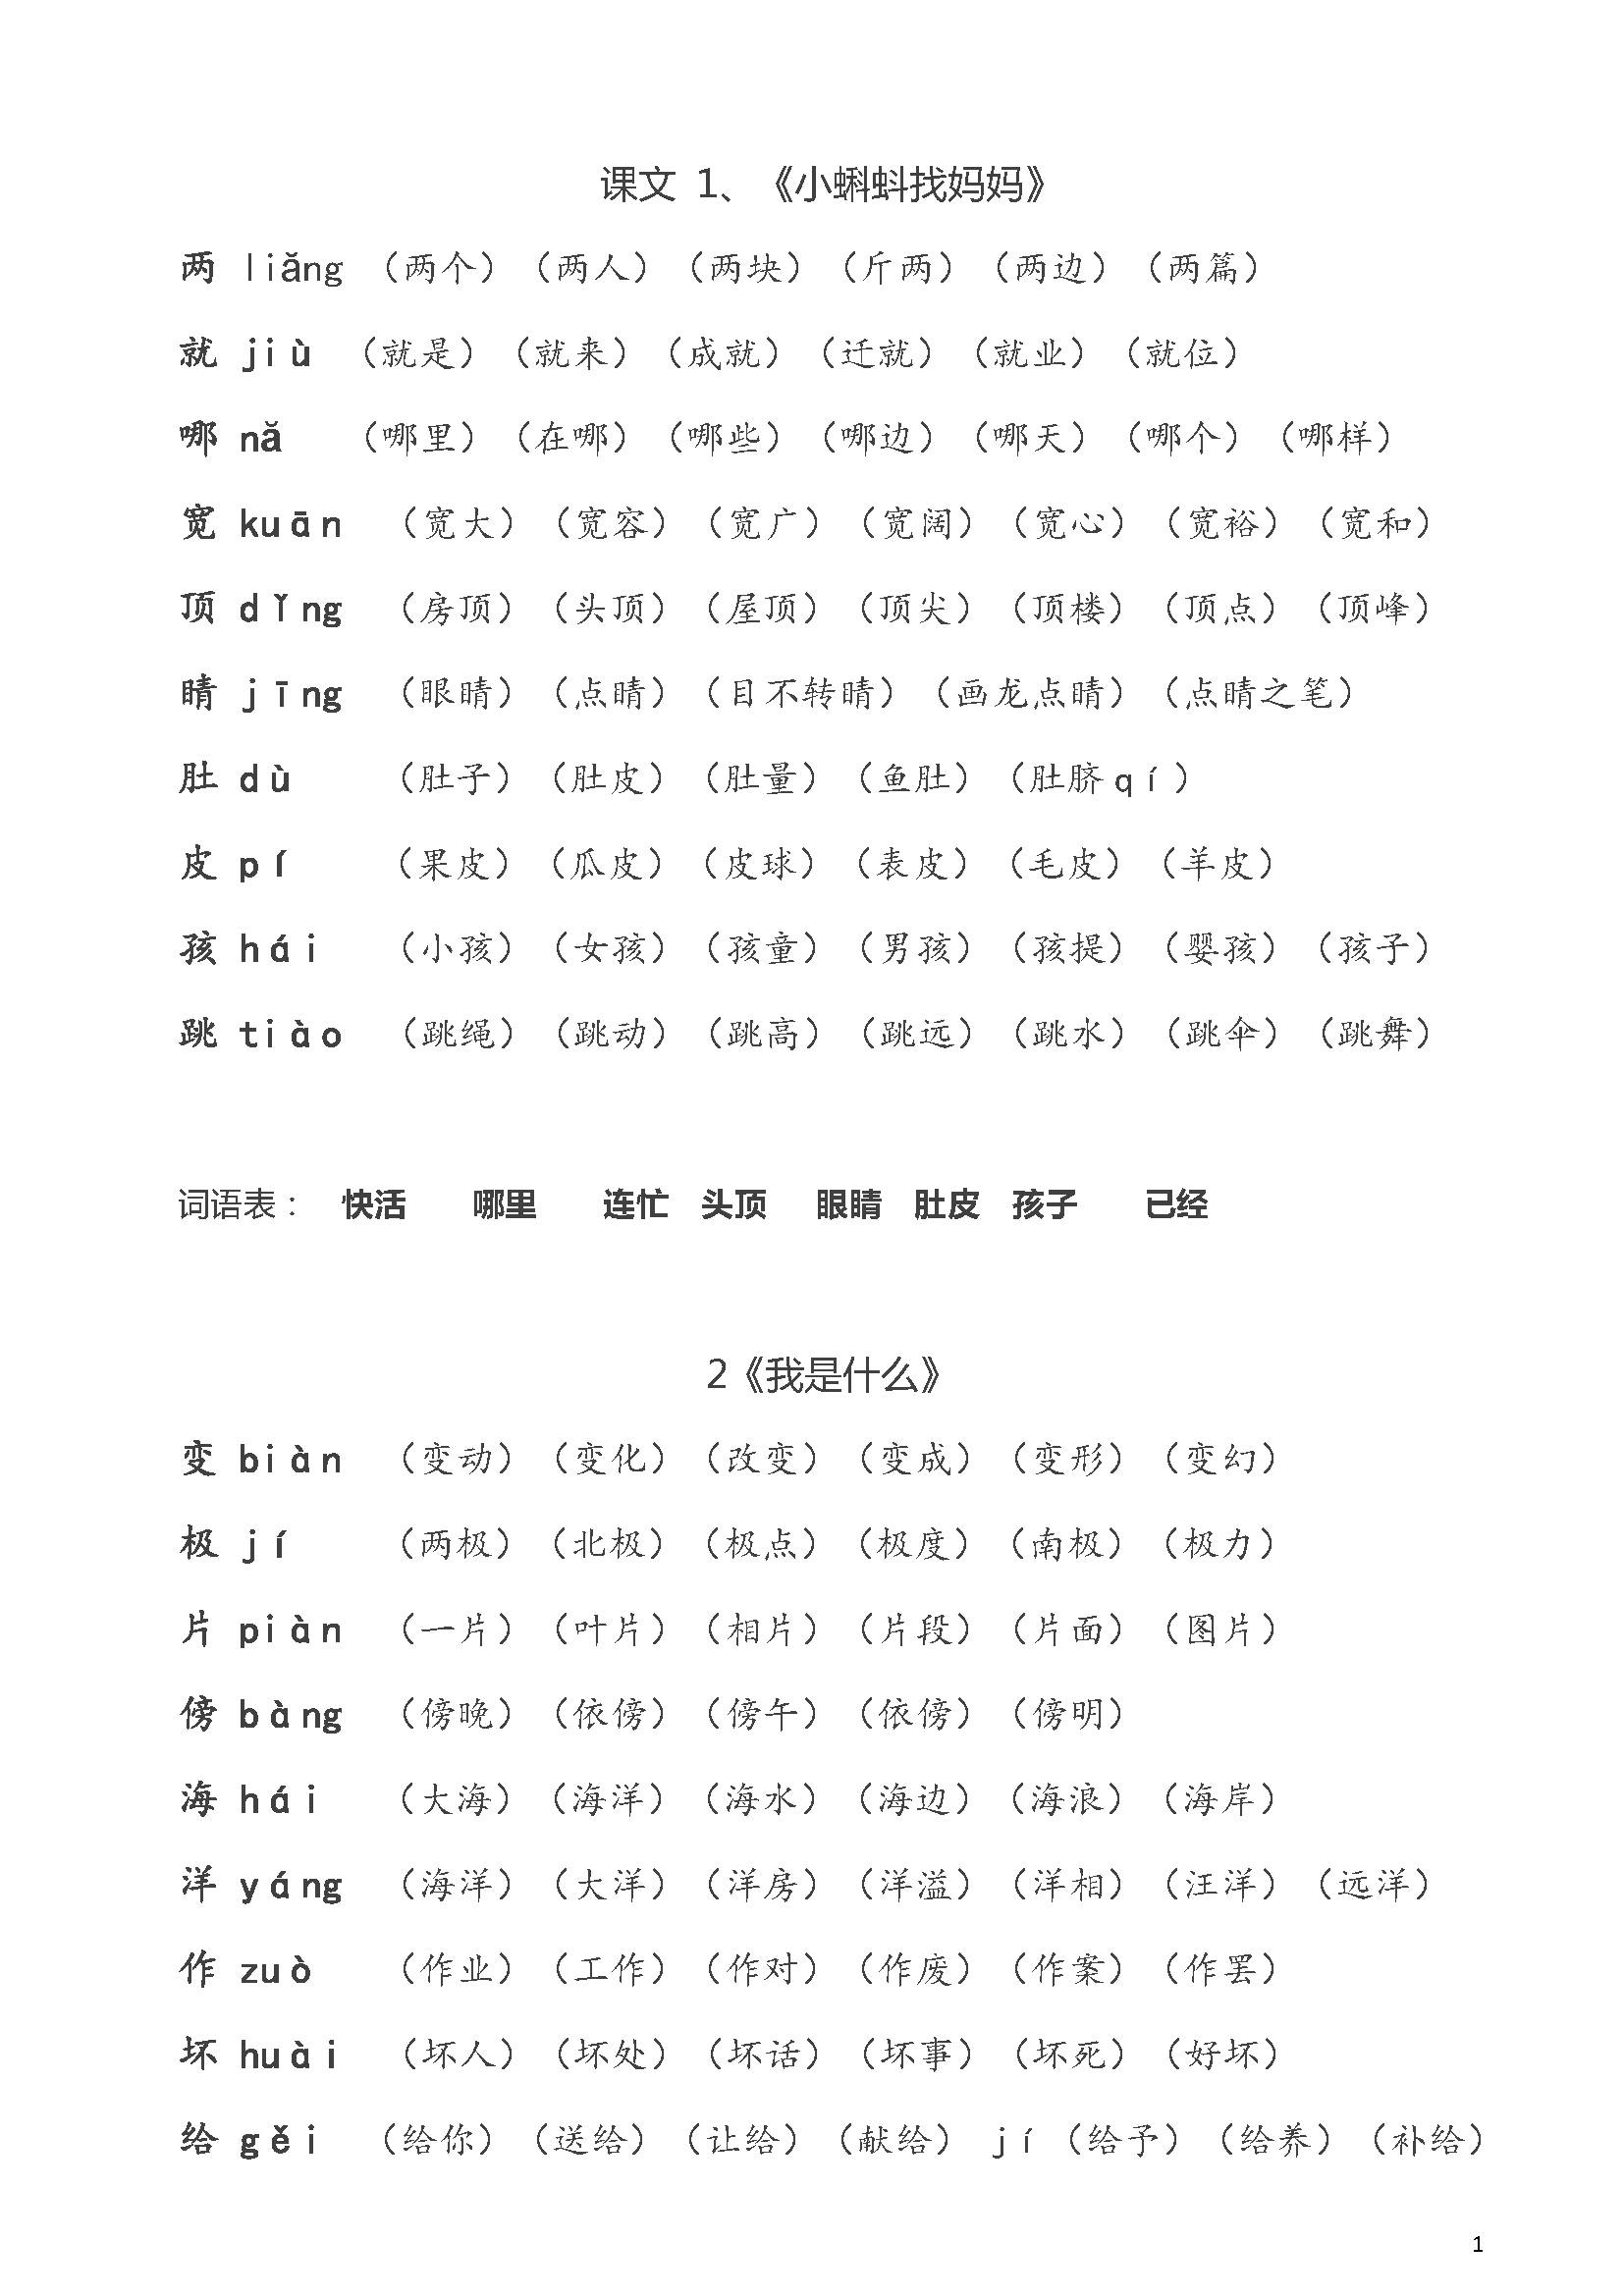 二年级语文上册生字拼音组词(打印下载版)_搜狐教育_搜狐网